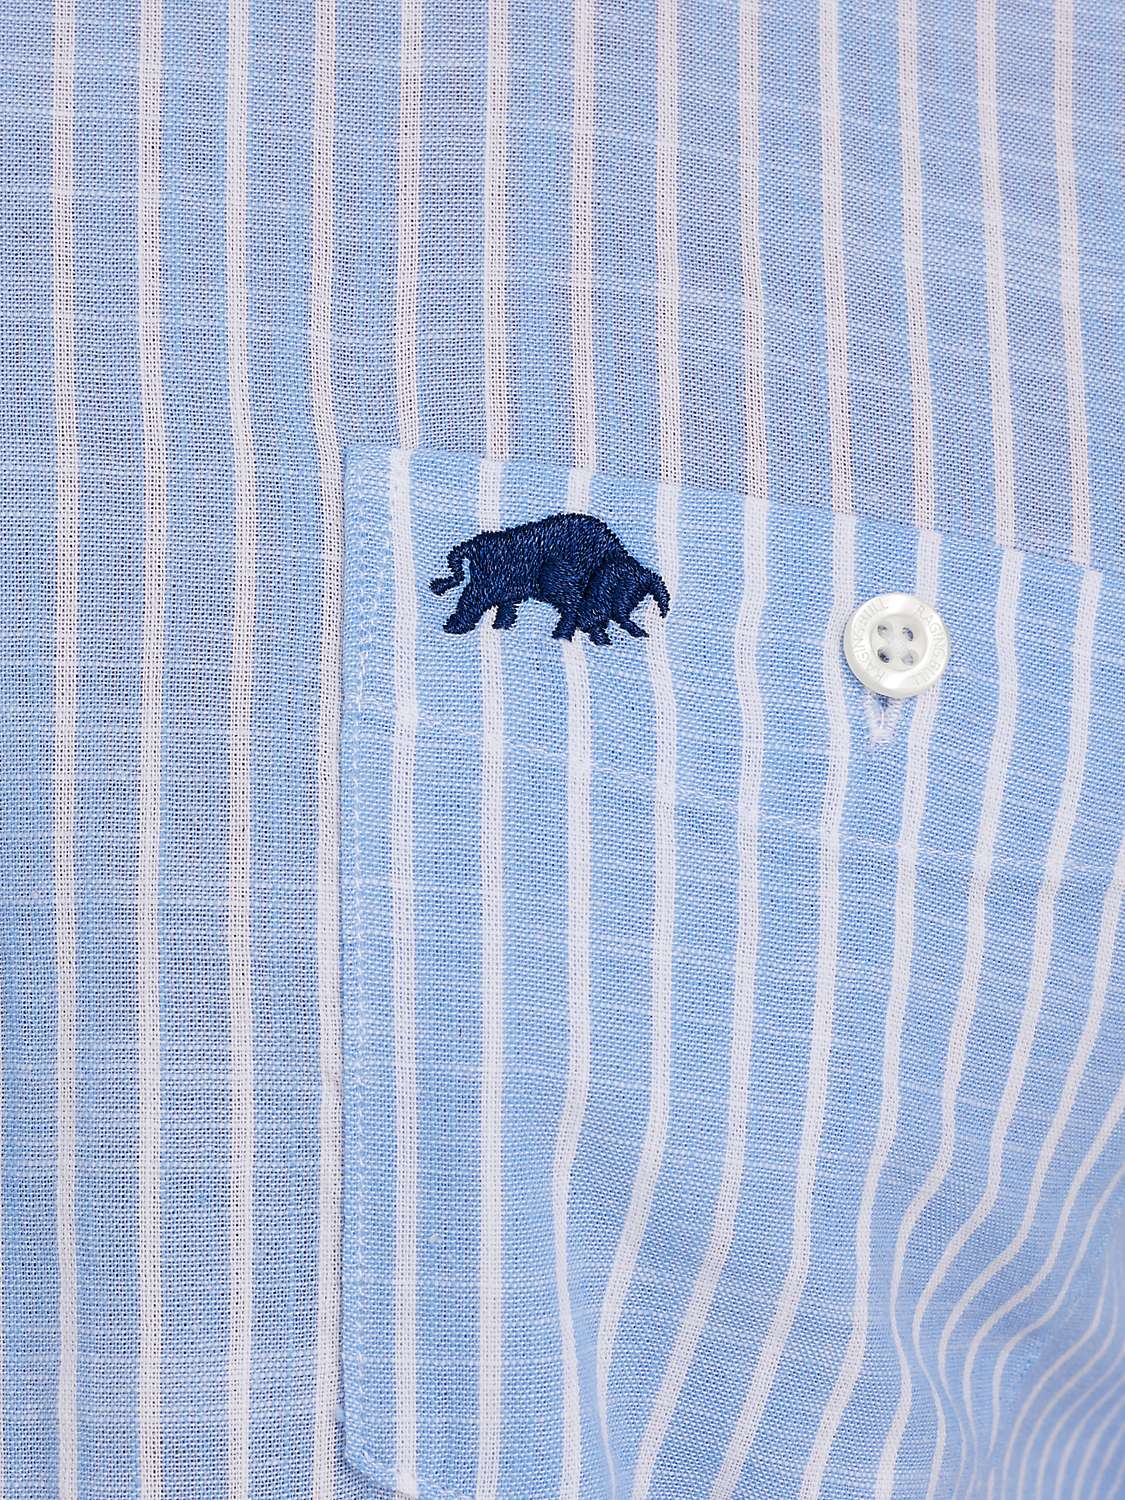 Buy Raging Bull Fine Stripe Linen Look Short Sleeve Shirt, Sky Blue Online at johnlewis.com